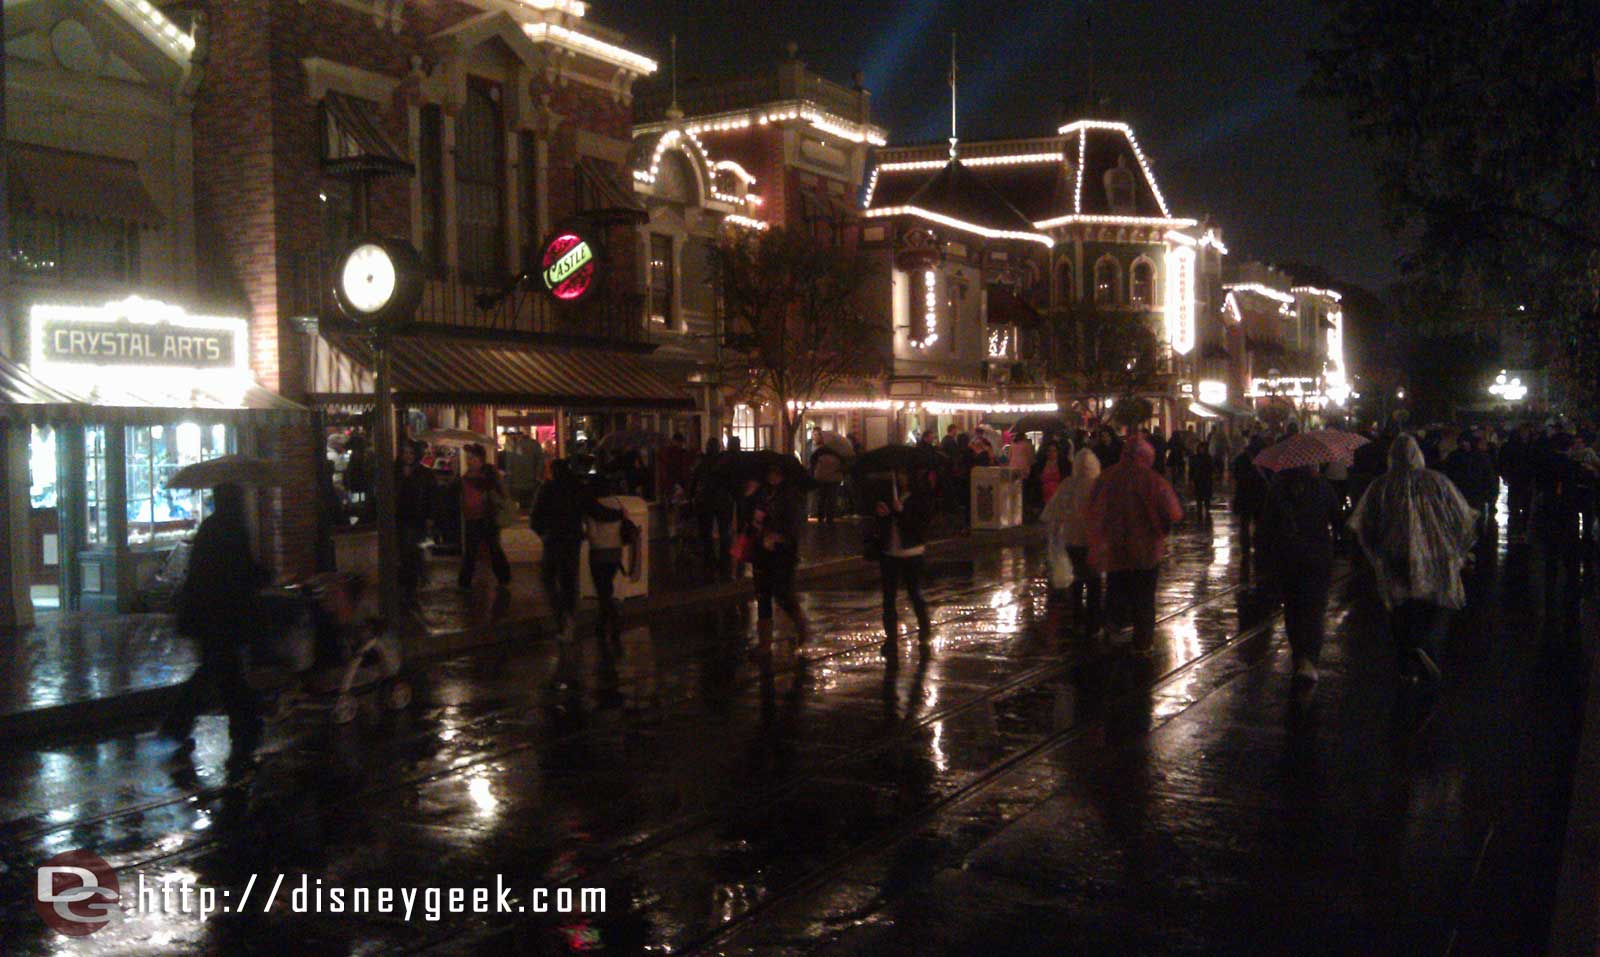 The rain has begun. A look at Main Street